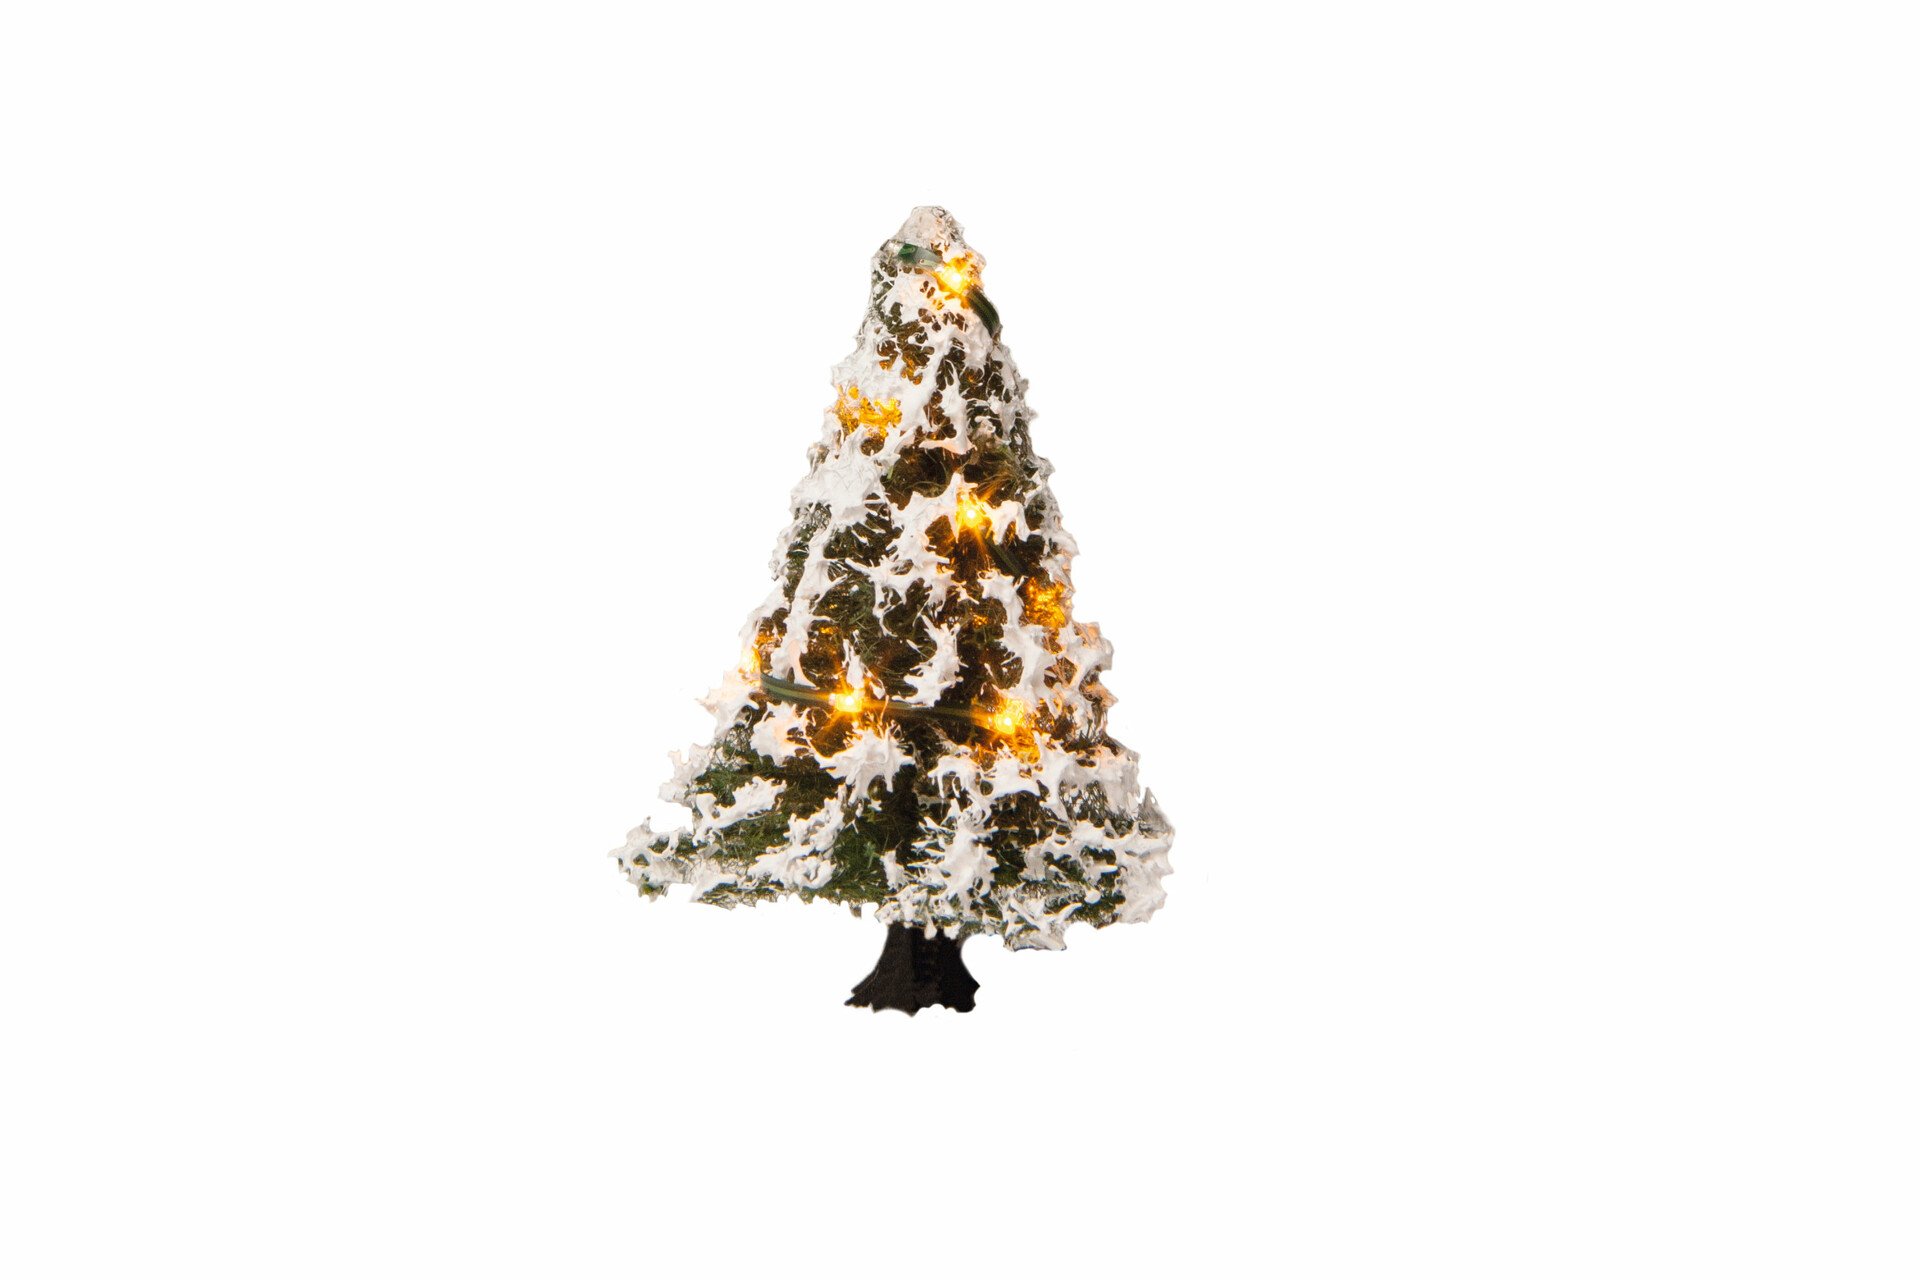 Beleuchteter Weihnachtsbaum mit 10 LEDs, verschneit, 5 cm hoch